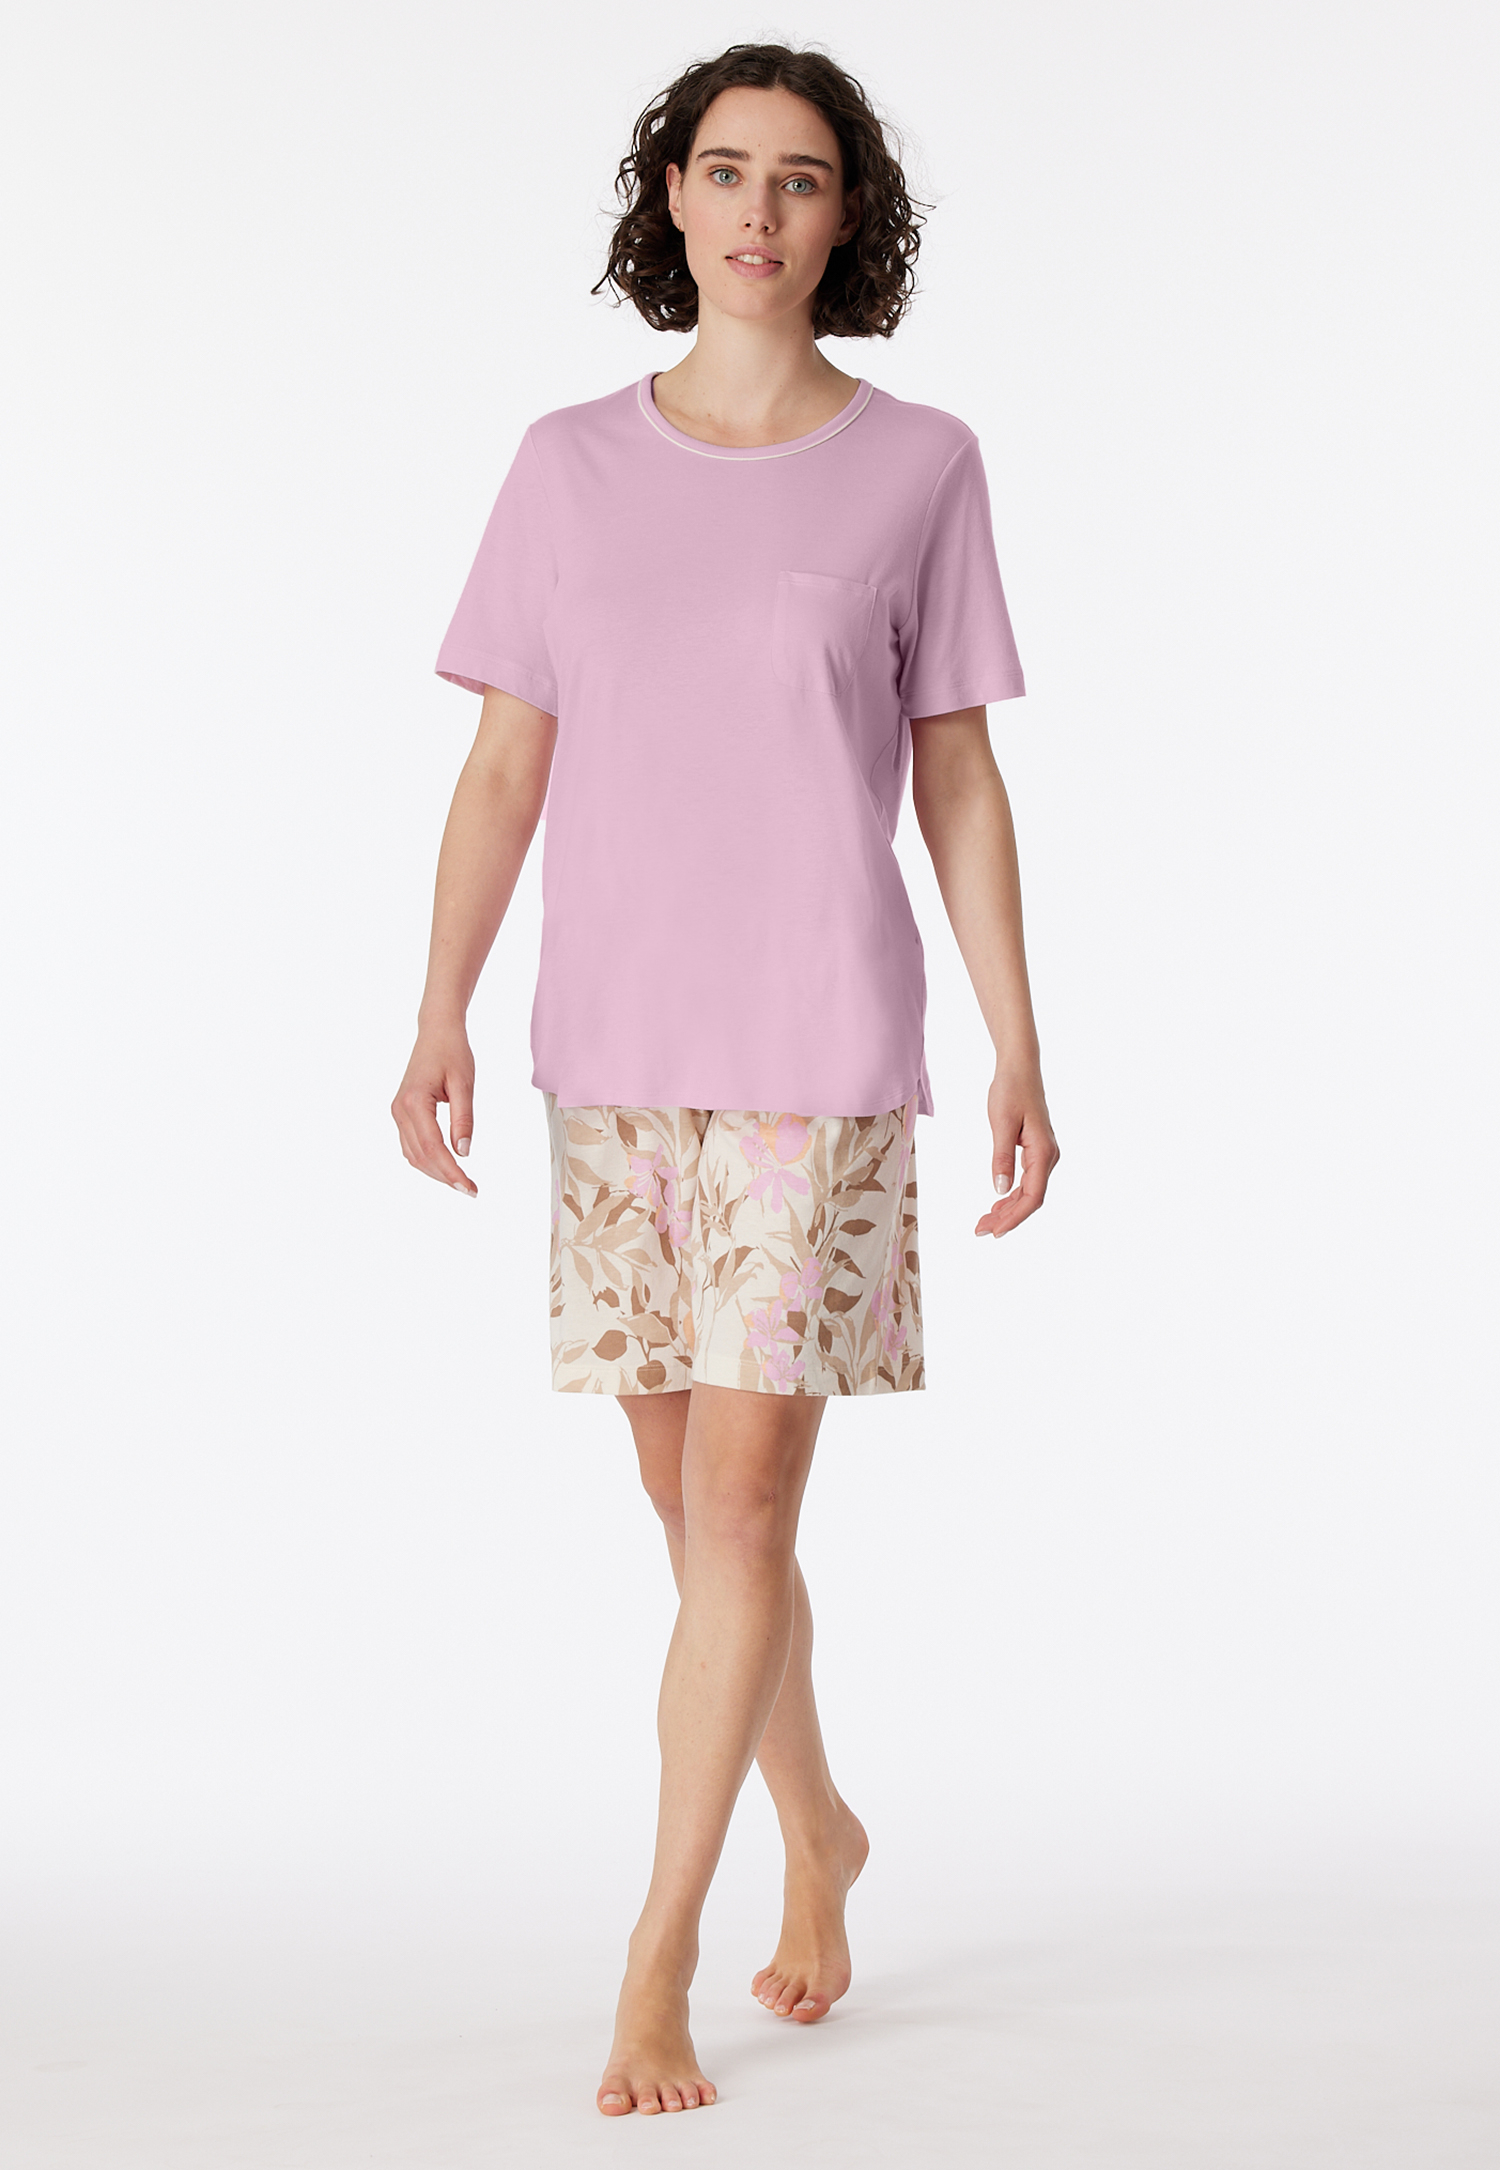 Schlafanzug kurz powder pink - Comfort Nightwear 40 von Schiesser